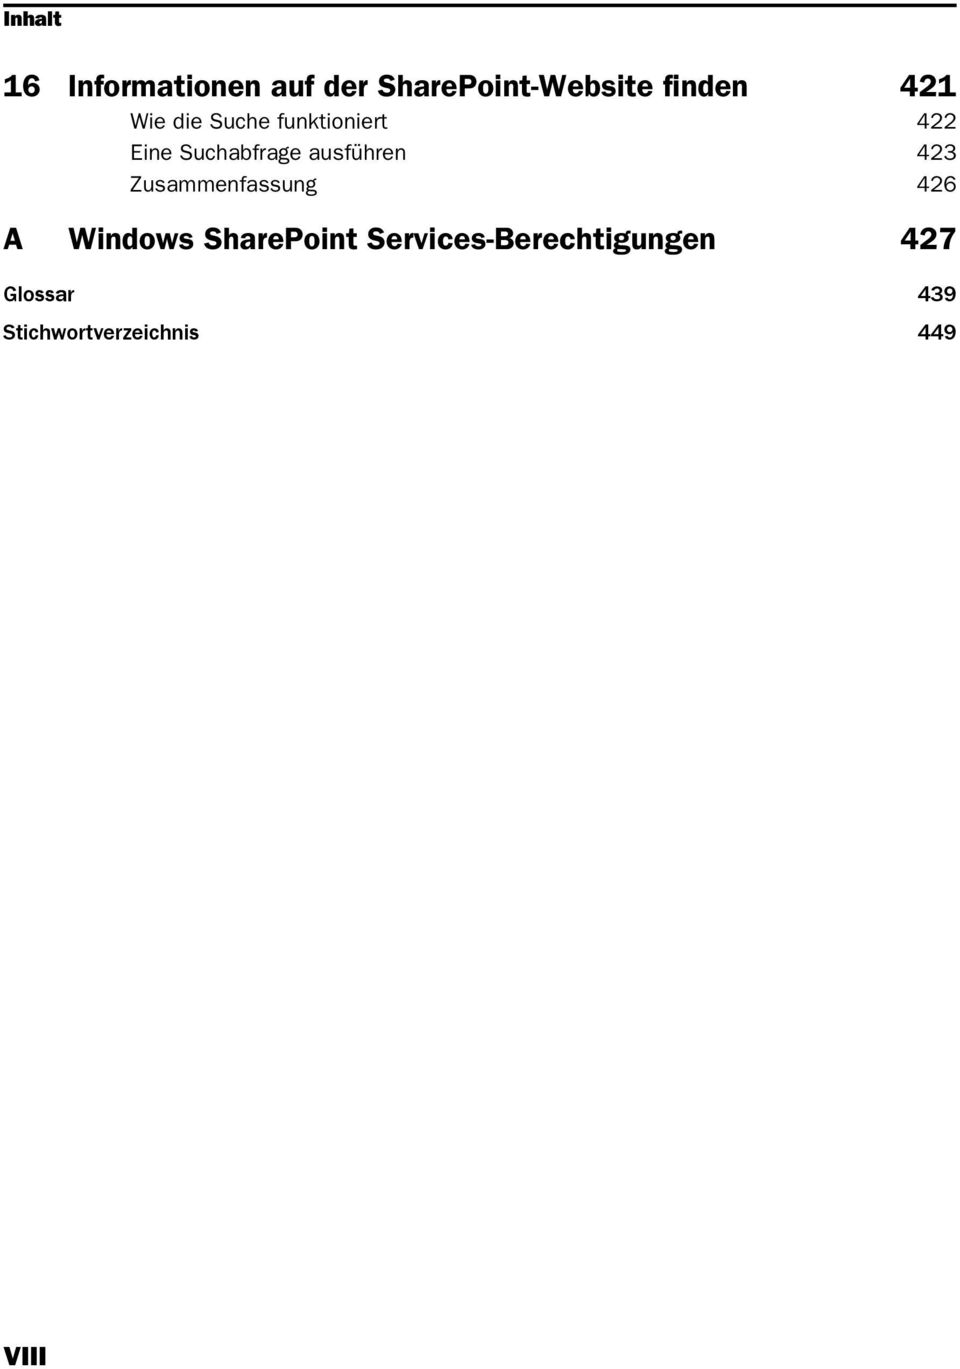 ausführen 423 Zusammenfassung 426 A Windows SharePoint